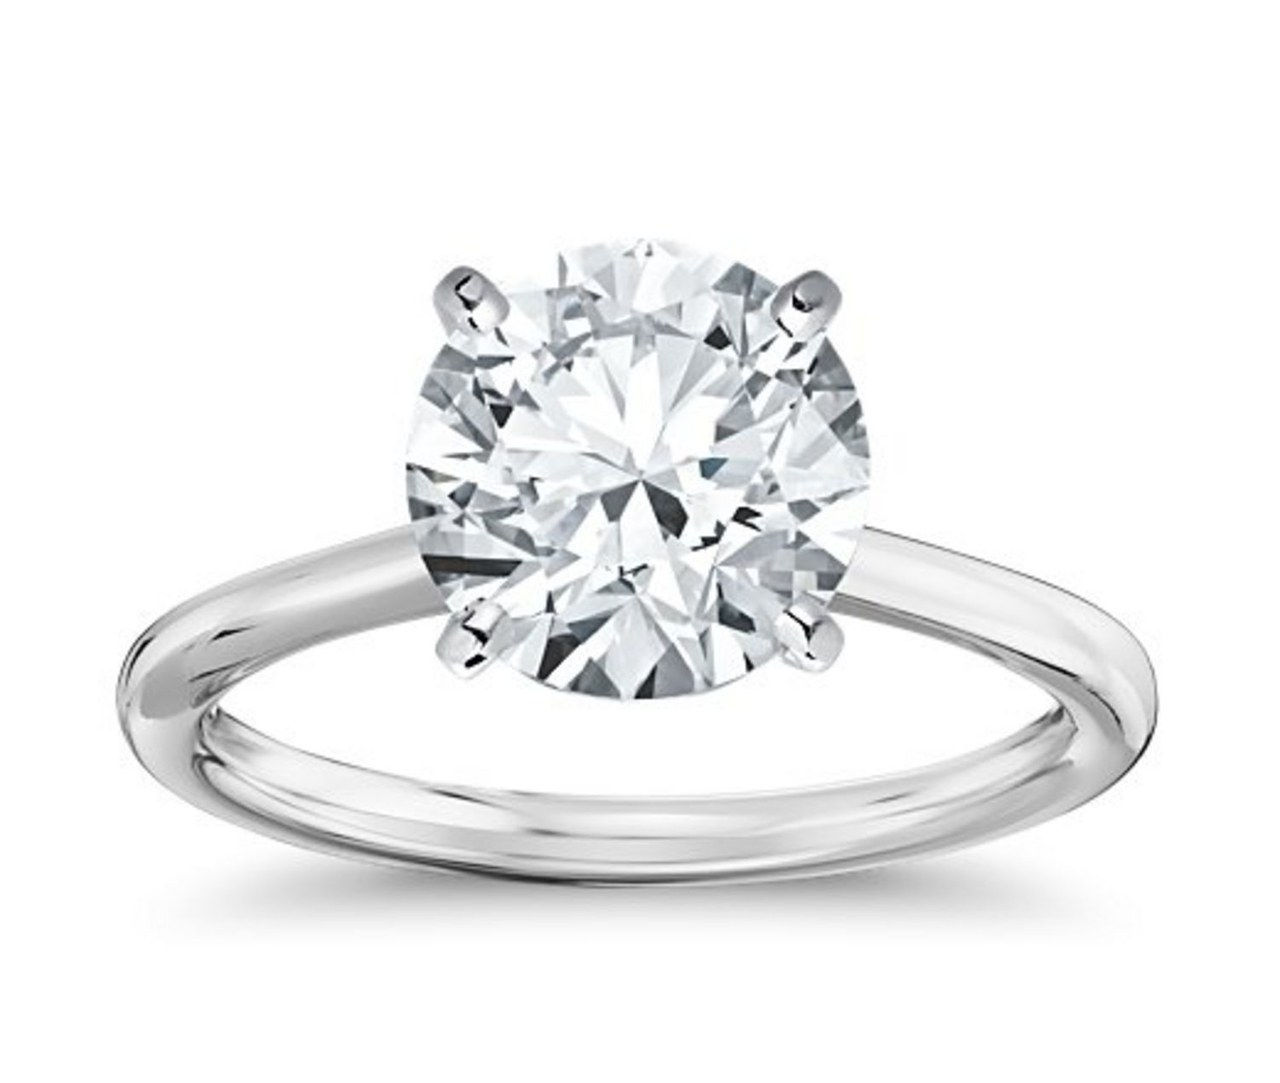 1 lauren conrad engagement ring william tell celebrity weddings 1013